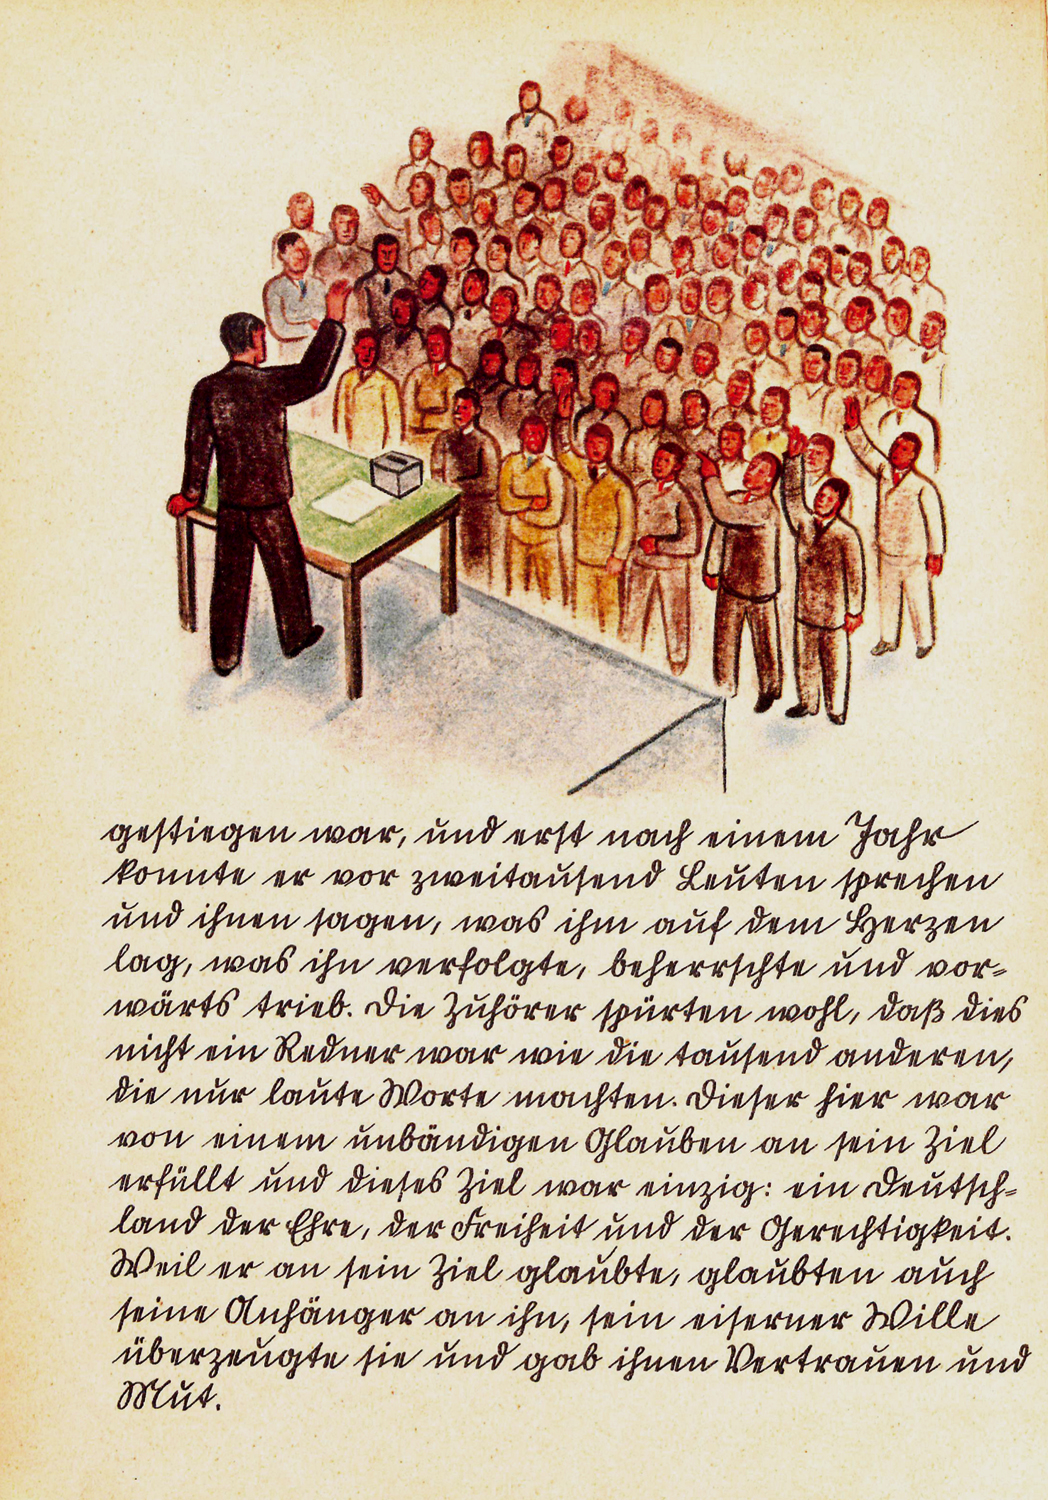 Springenschmid, Karl & Mühlmann, Leopoldine (1936). "Eine wahre Geschichte. Worte und Bilder von zwei Deutschen aus dem Auslande", 11.-18. Aufl., Stuttgart 1937